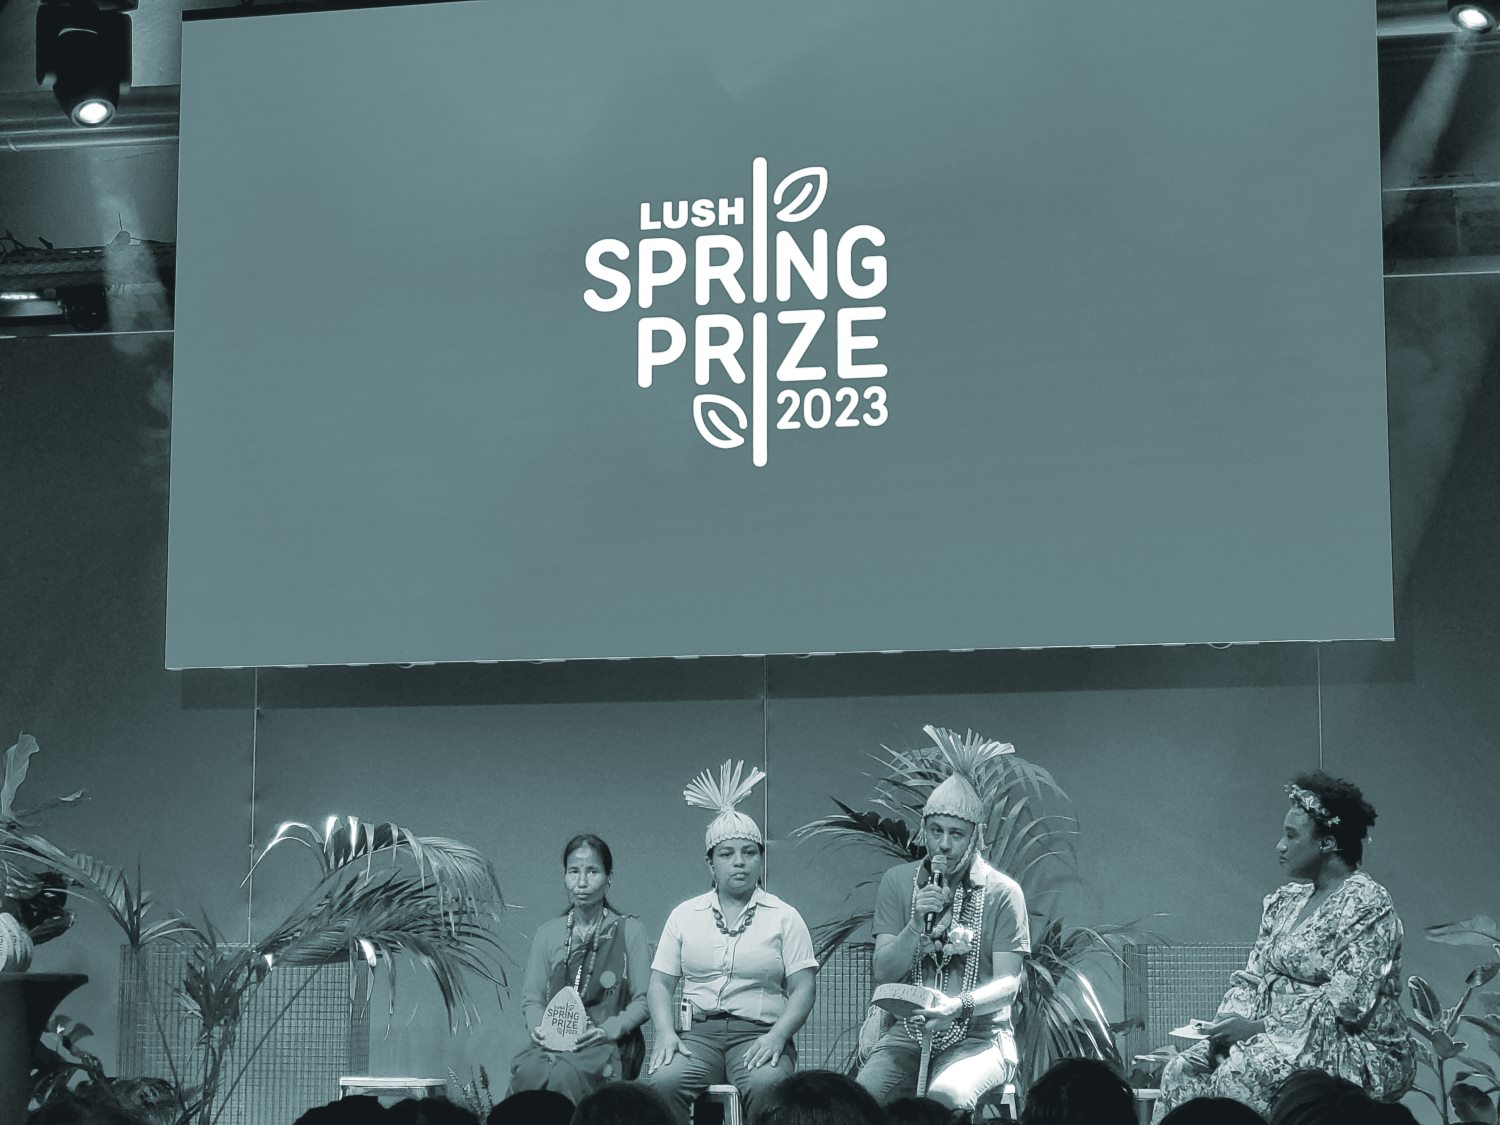 Preisträger*innen Brasilien & Negal beim Lush Spring Prize 2023 auf der Bühne